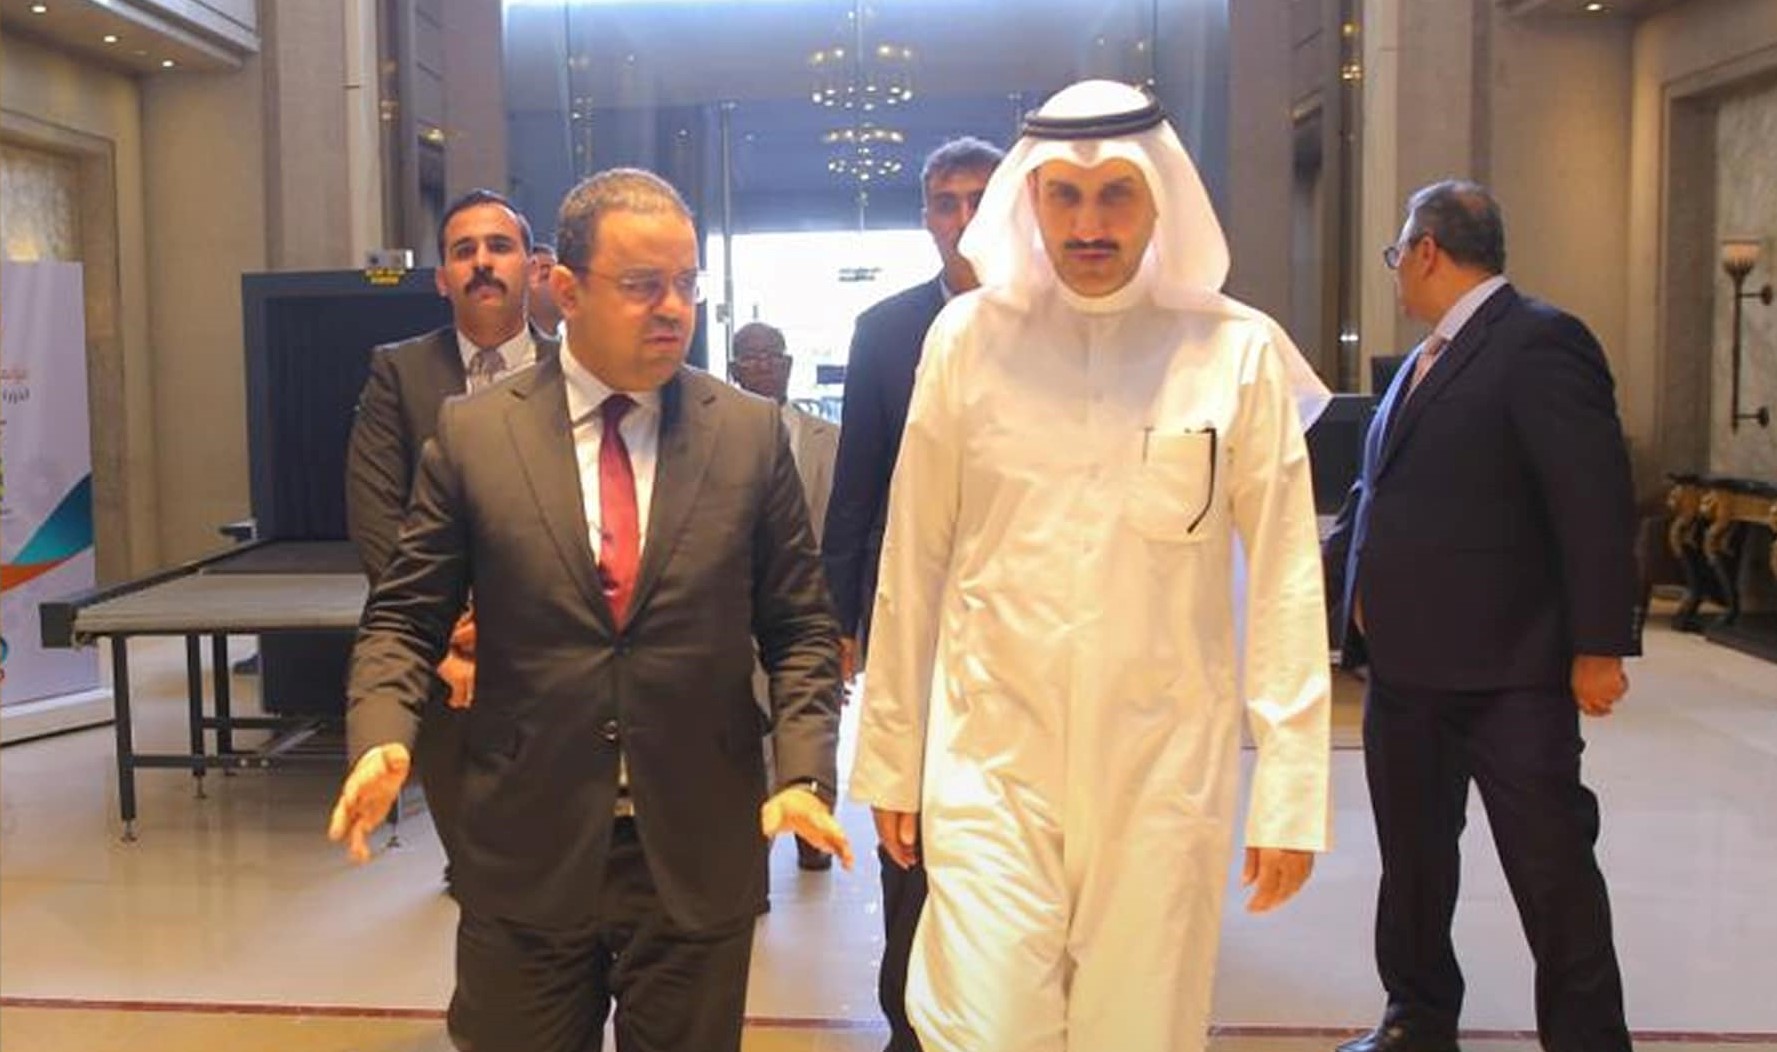 Le ministre du Travail et réhabilitation arrive au Caire pour participer aux travaux de la Conférence des ministres arabes du Travail.